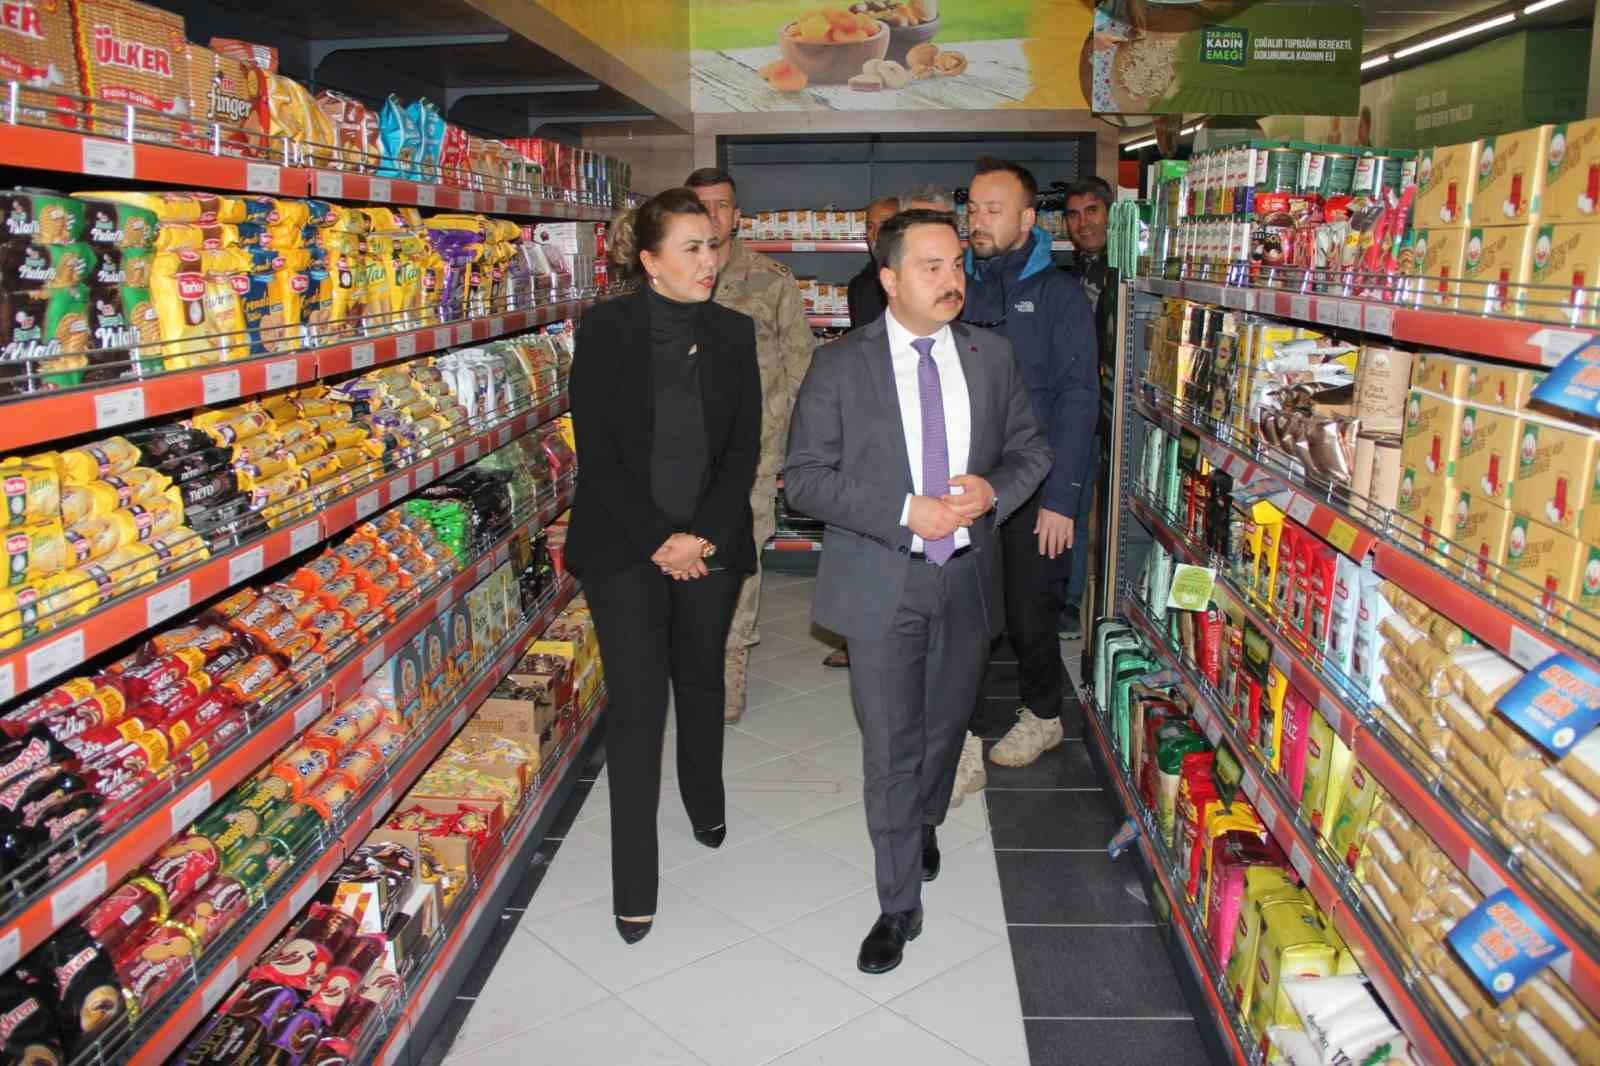 Muradiye’de ‘Tarım Kredi Kooperatif Marketi’ açıldı